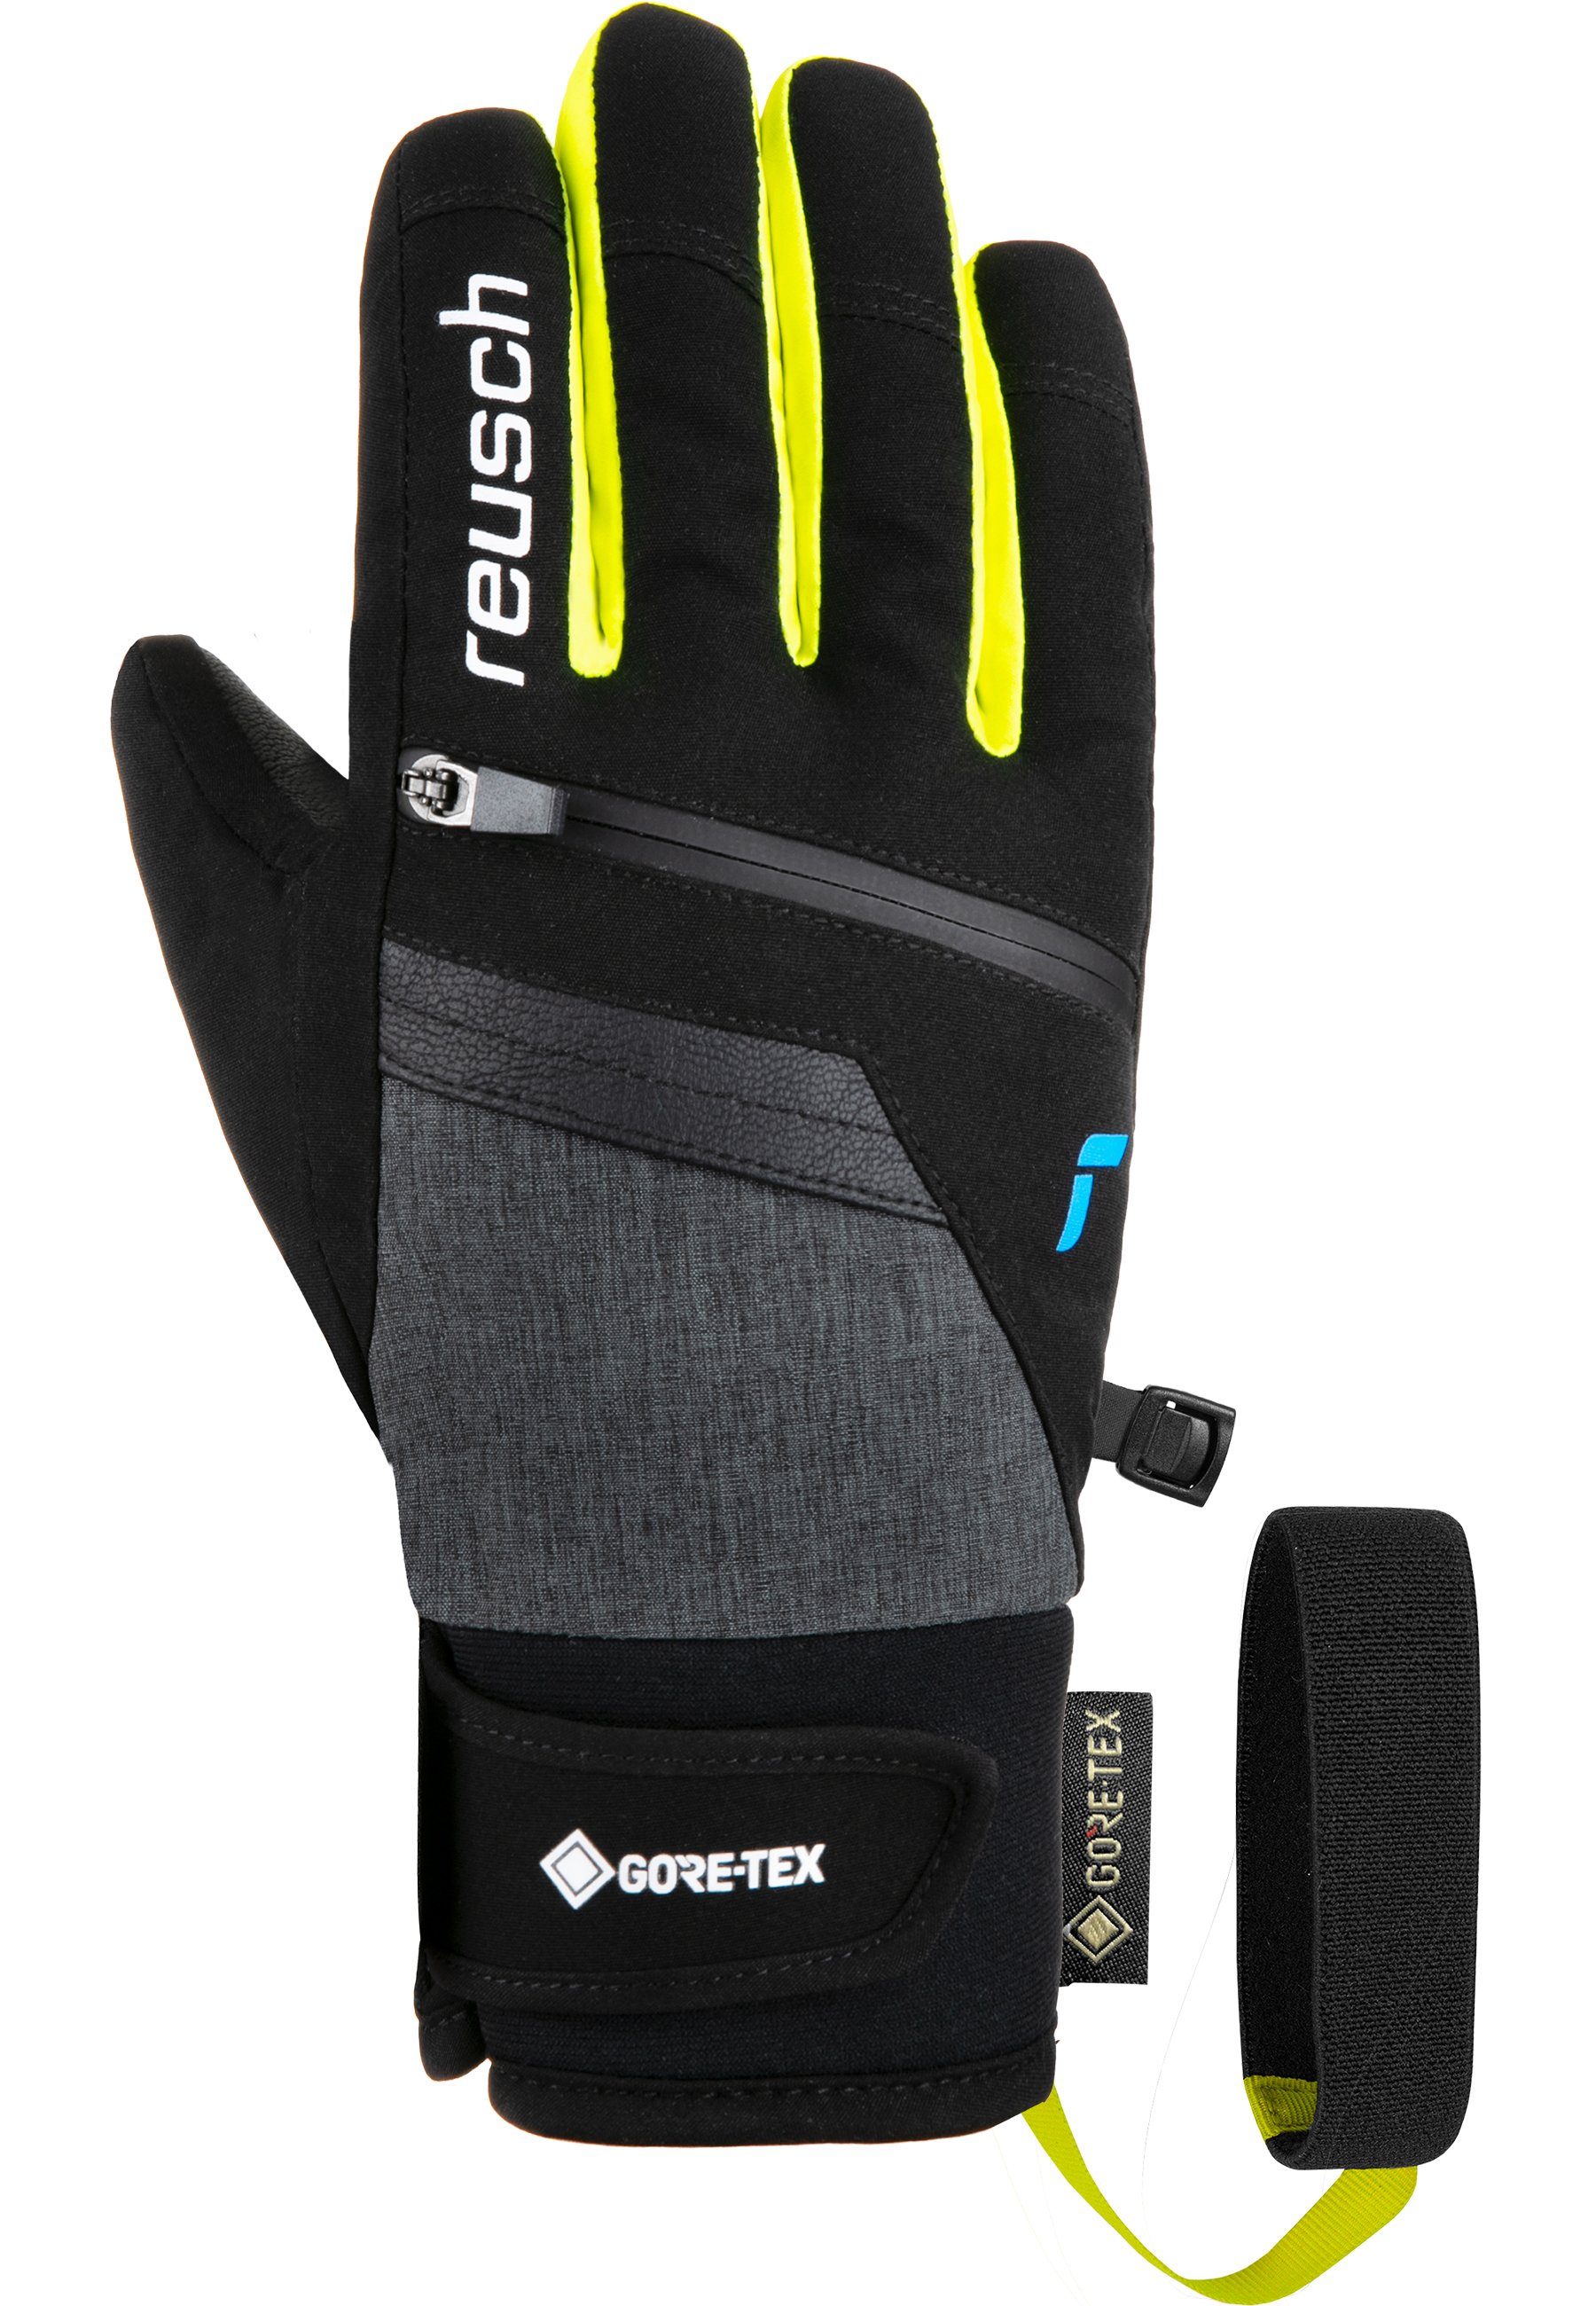 GORE-TEX Skihandschuhe Travis Junior in Design Reusch sportlichem schwarz-gelb